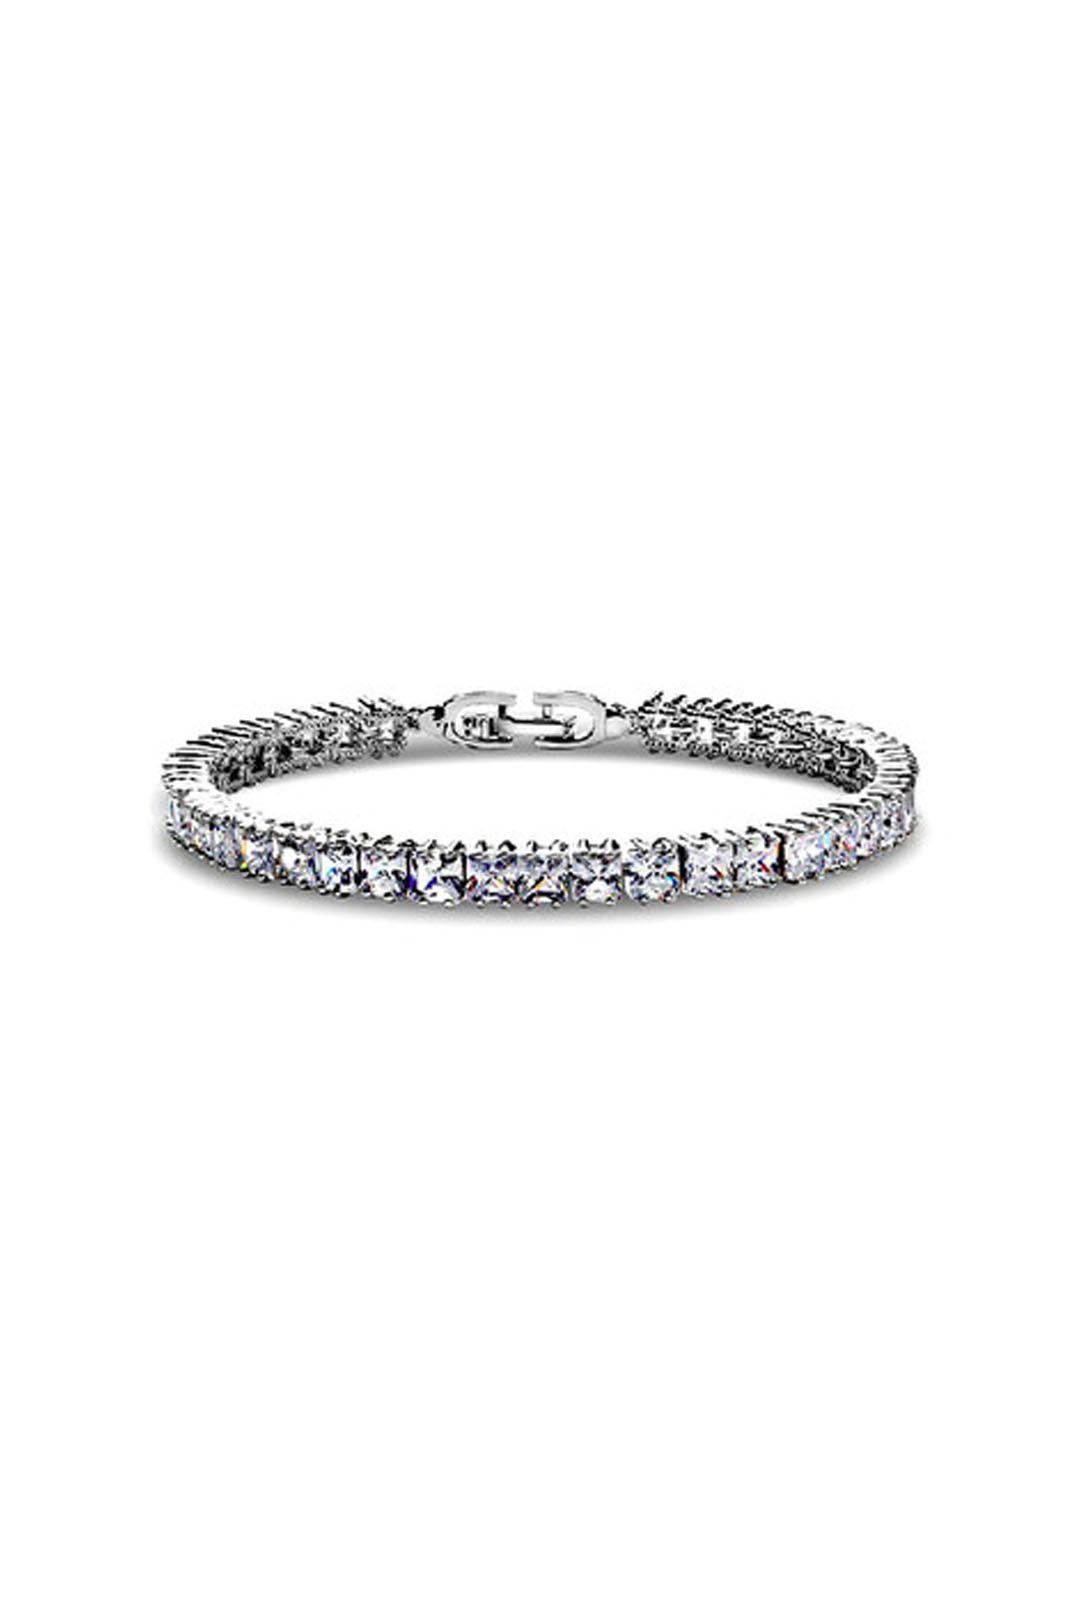 Krystal Couture - Princess Cut Tennis Bracelet - Silver - Front